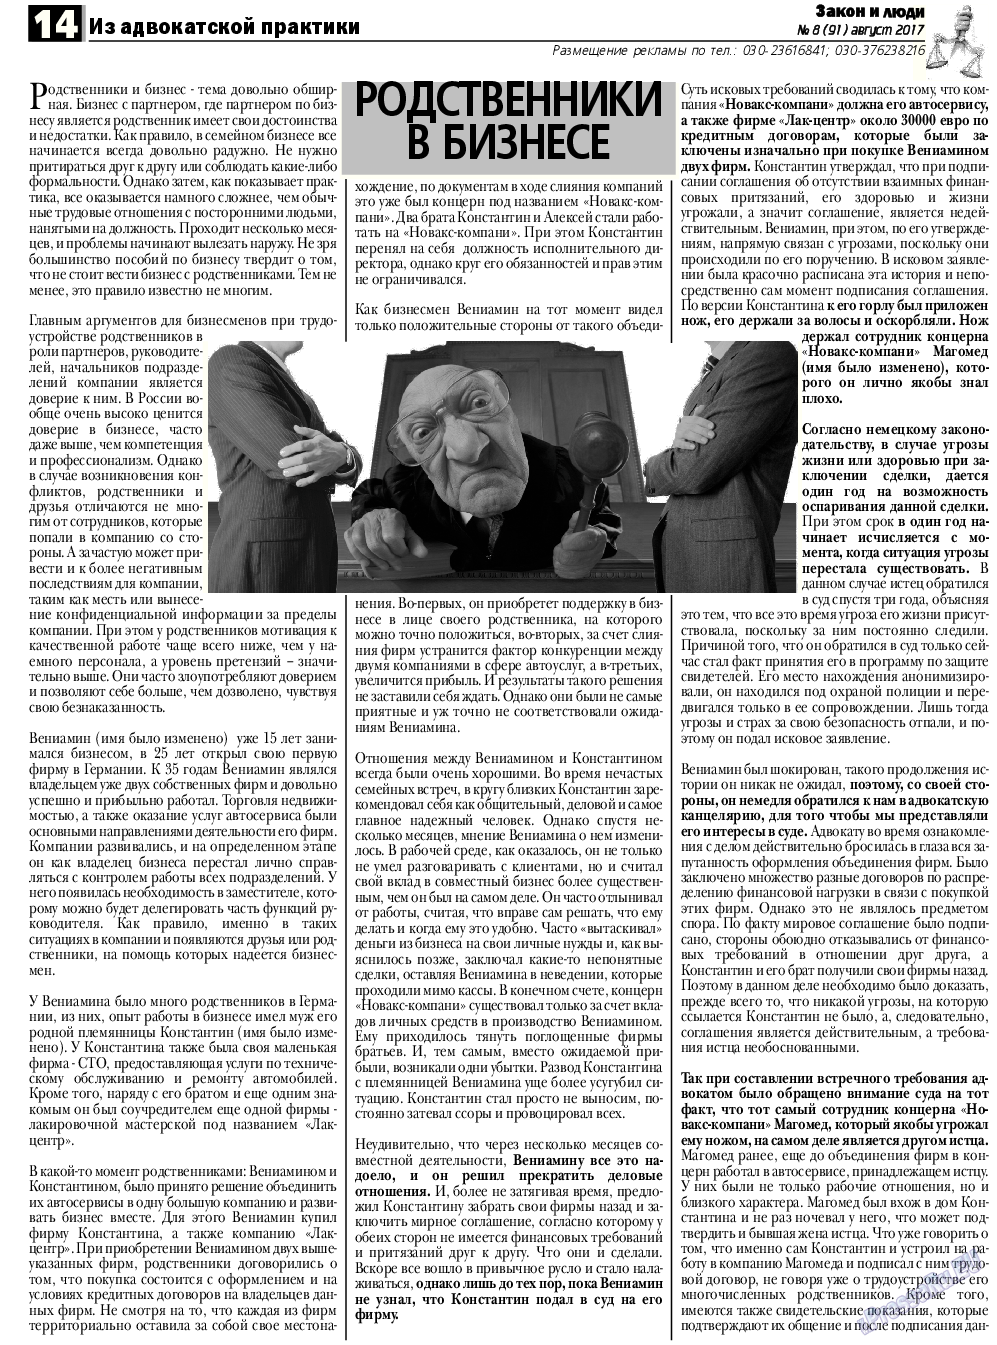 Закон и люди, газета. 2017 №8 стр.14